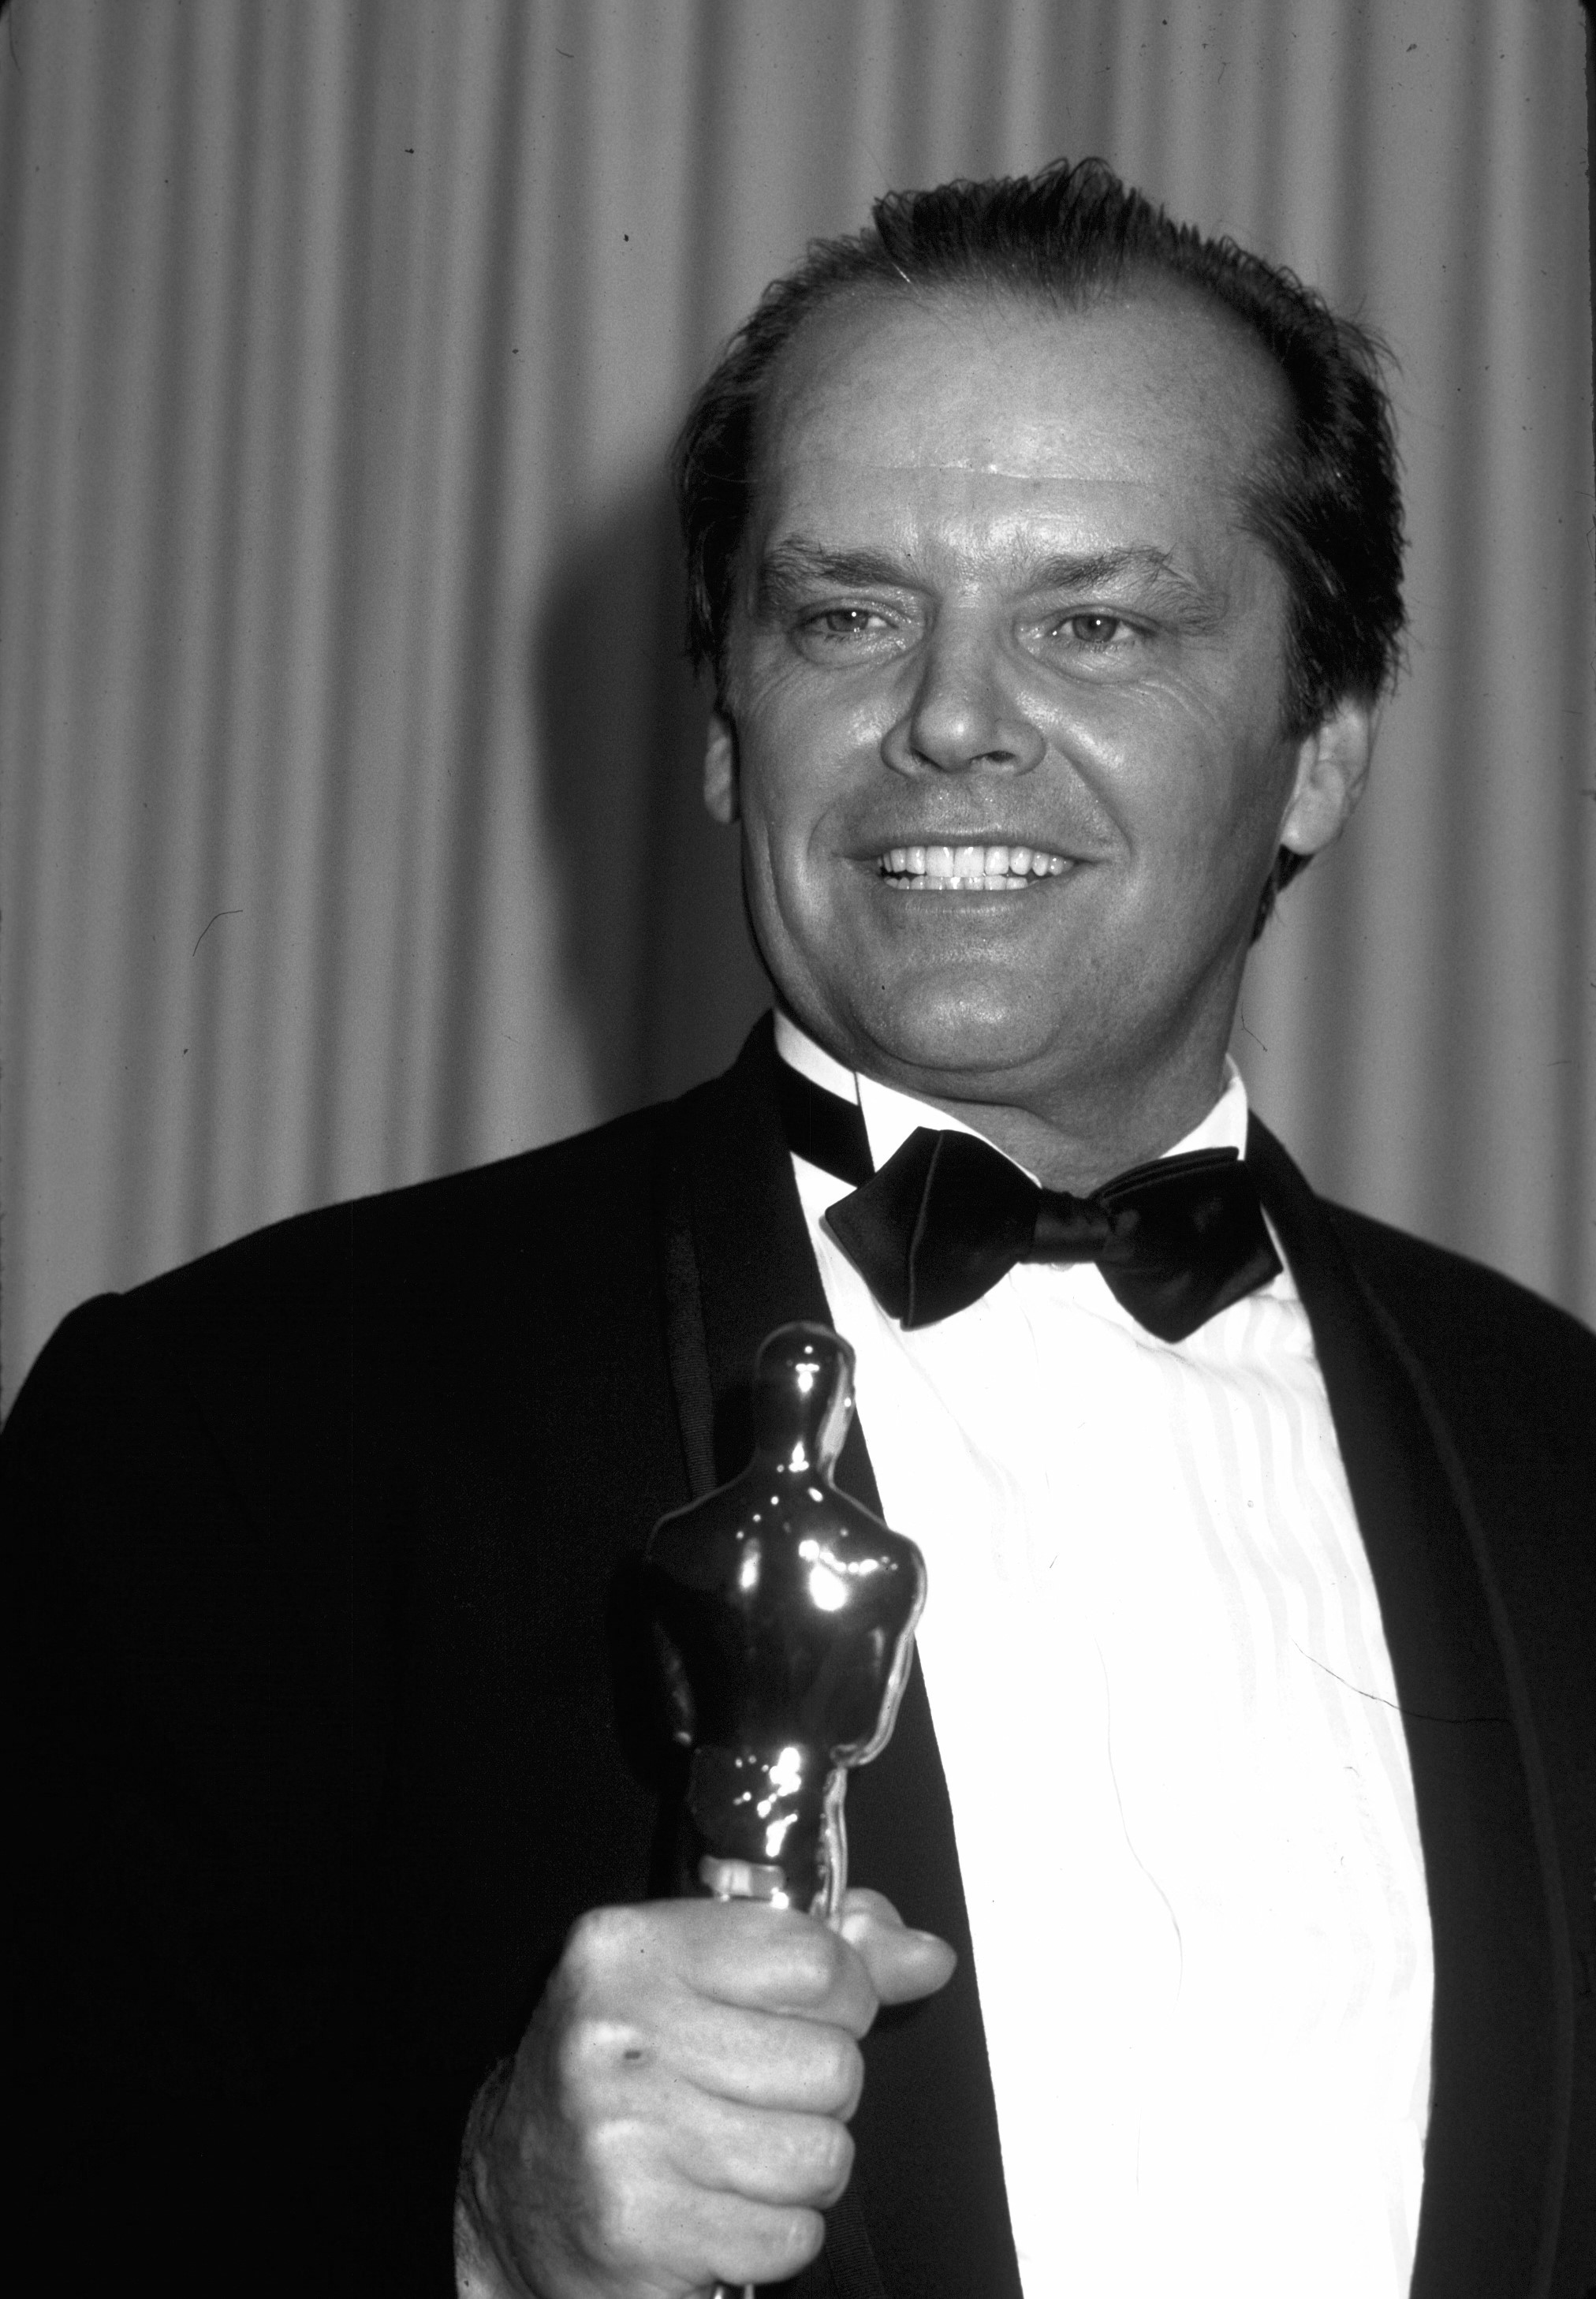 Jack Nicholson holds an Oscar and wears a tuxedo.